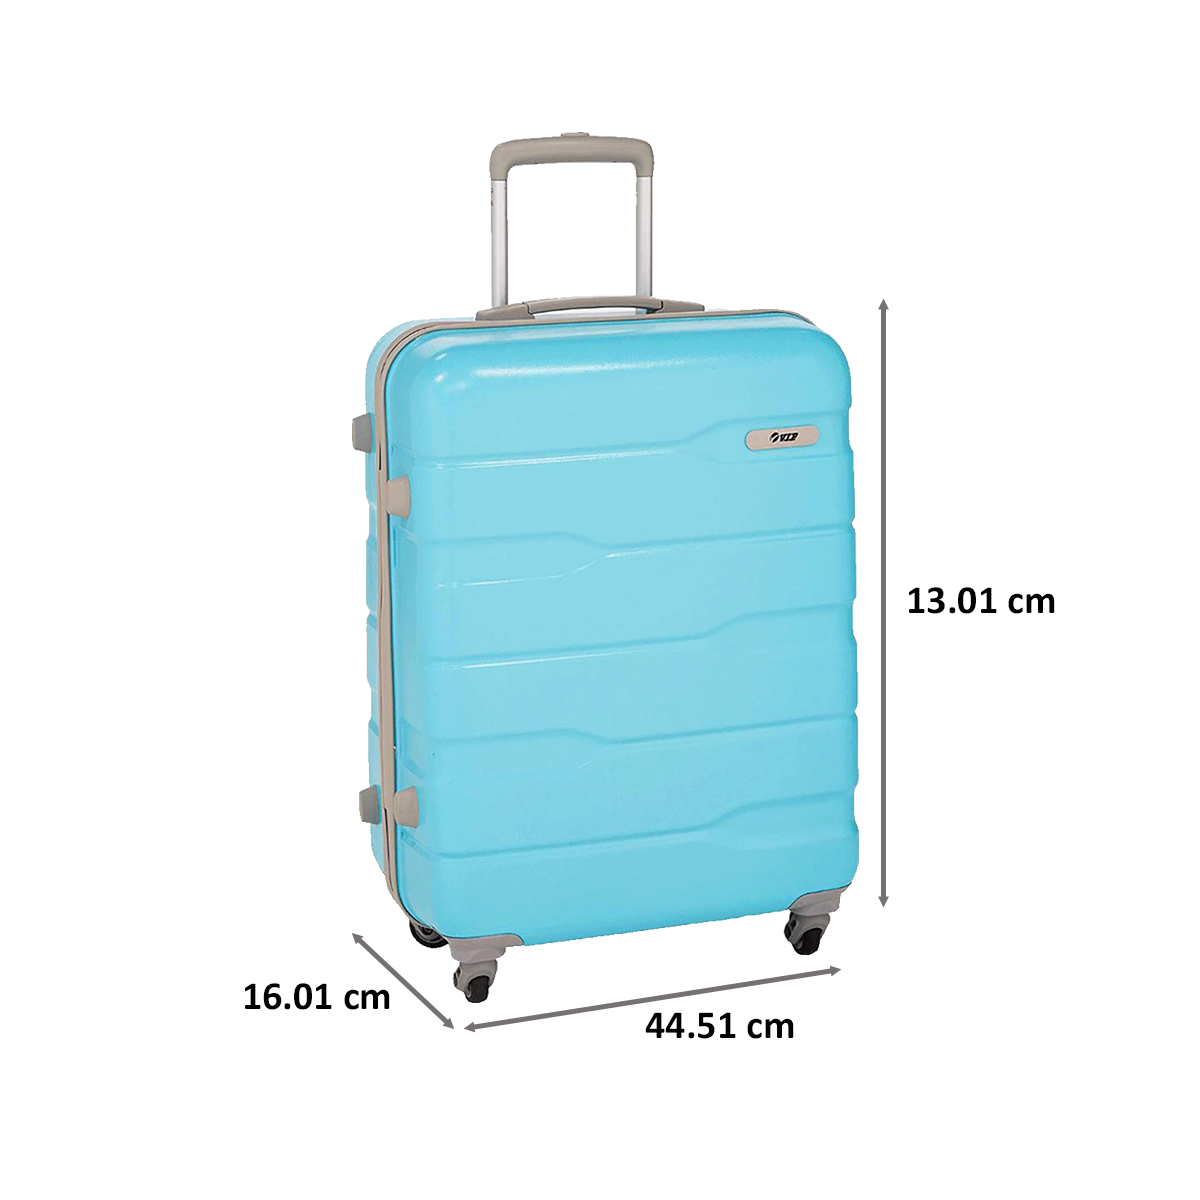 Details 78+ vip luggage trolley bags - esthdonghoadian